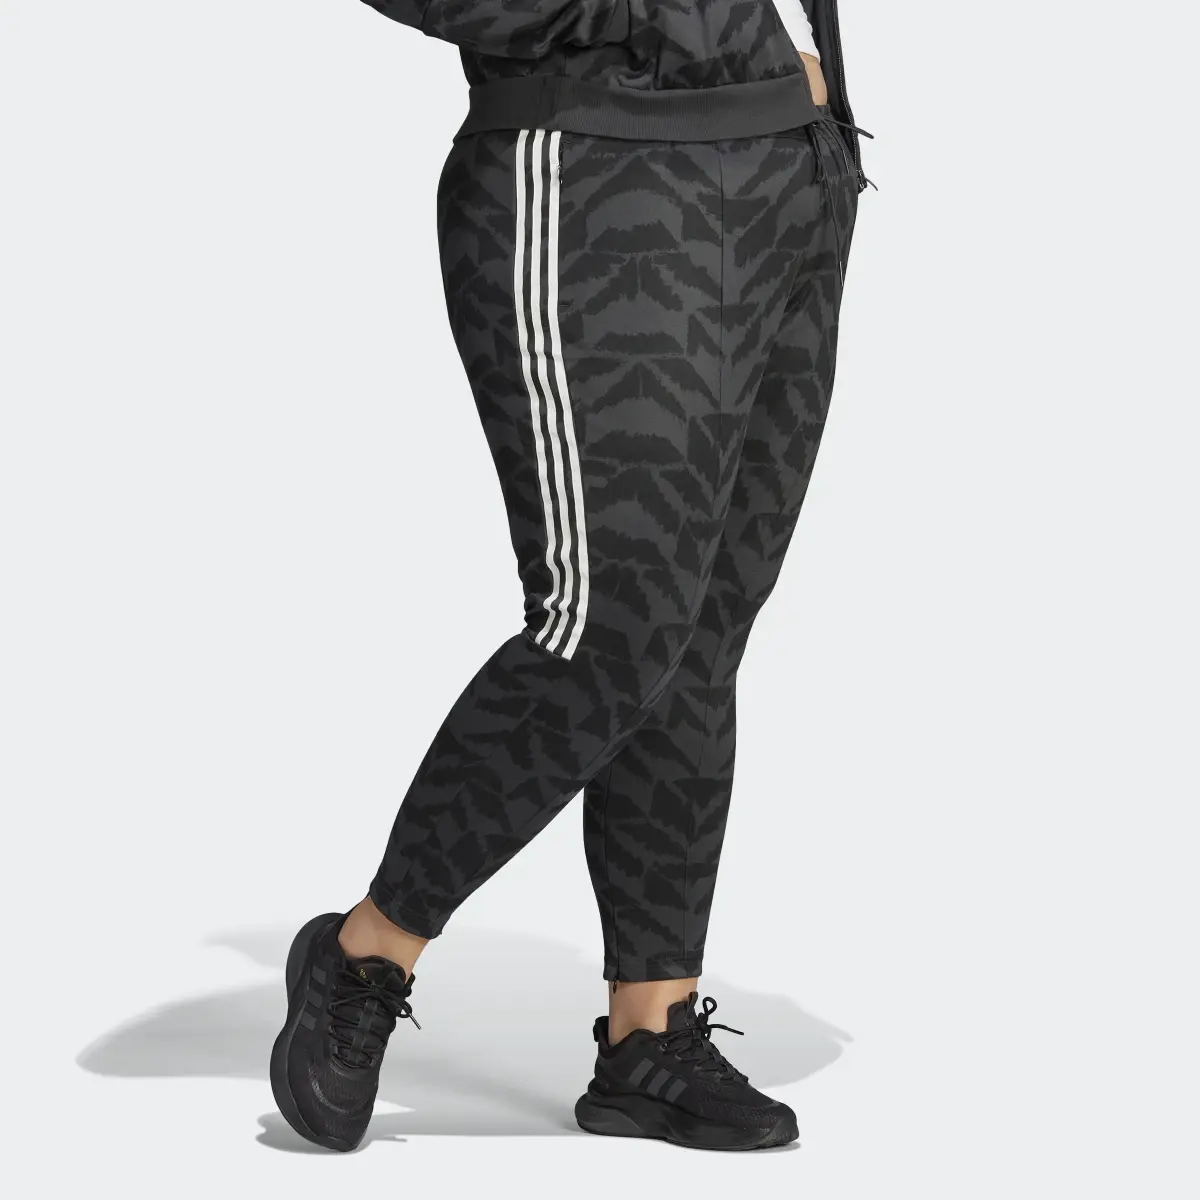 Adidas Tiro Suit Up Lifestyle Track Pant (Plus Size). 3